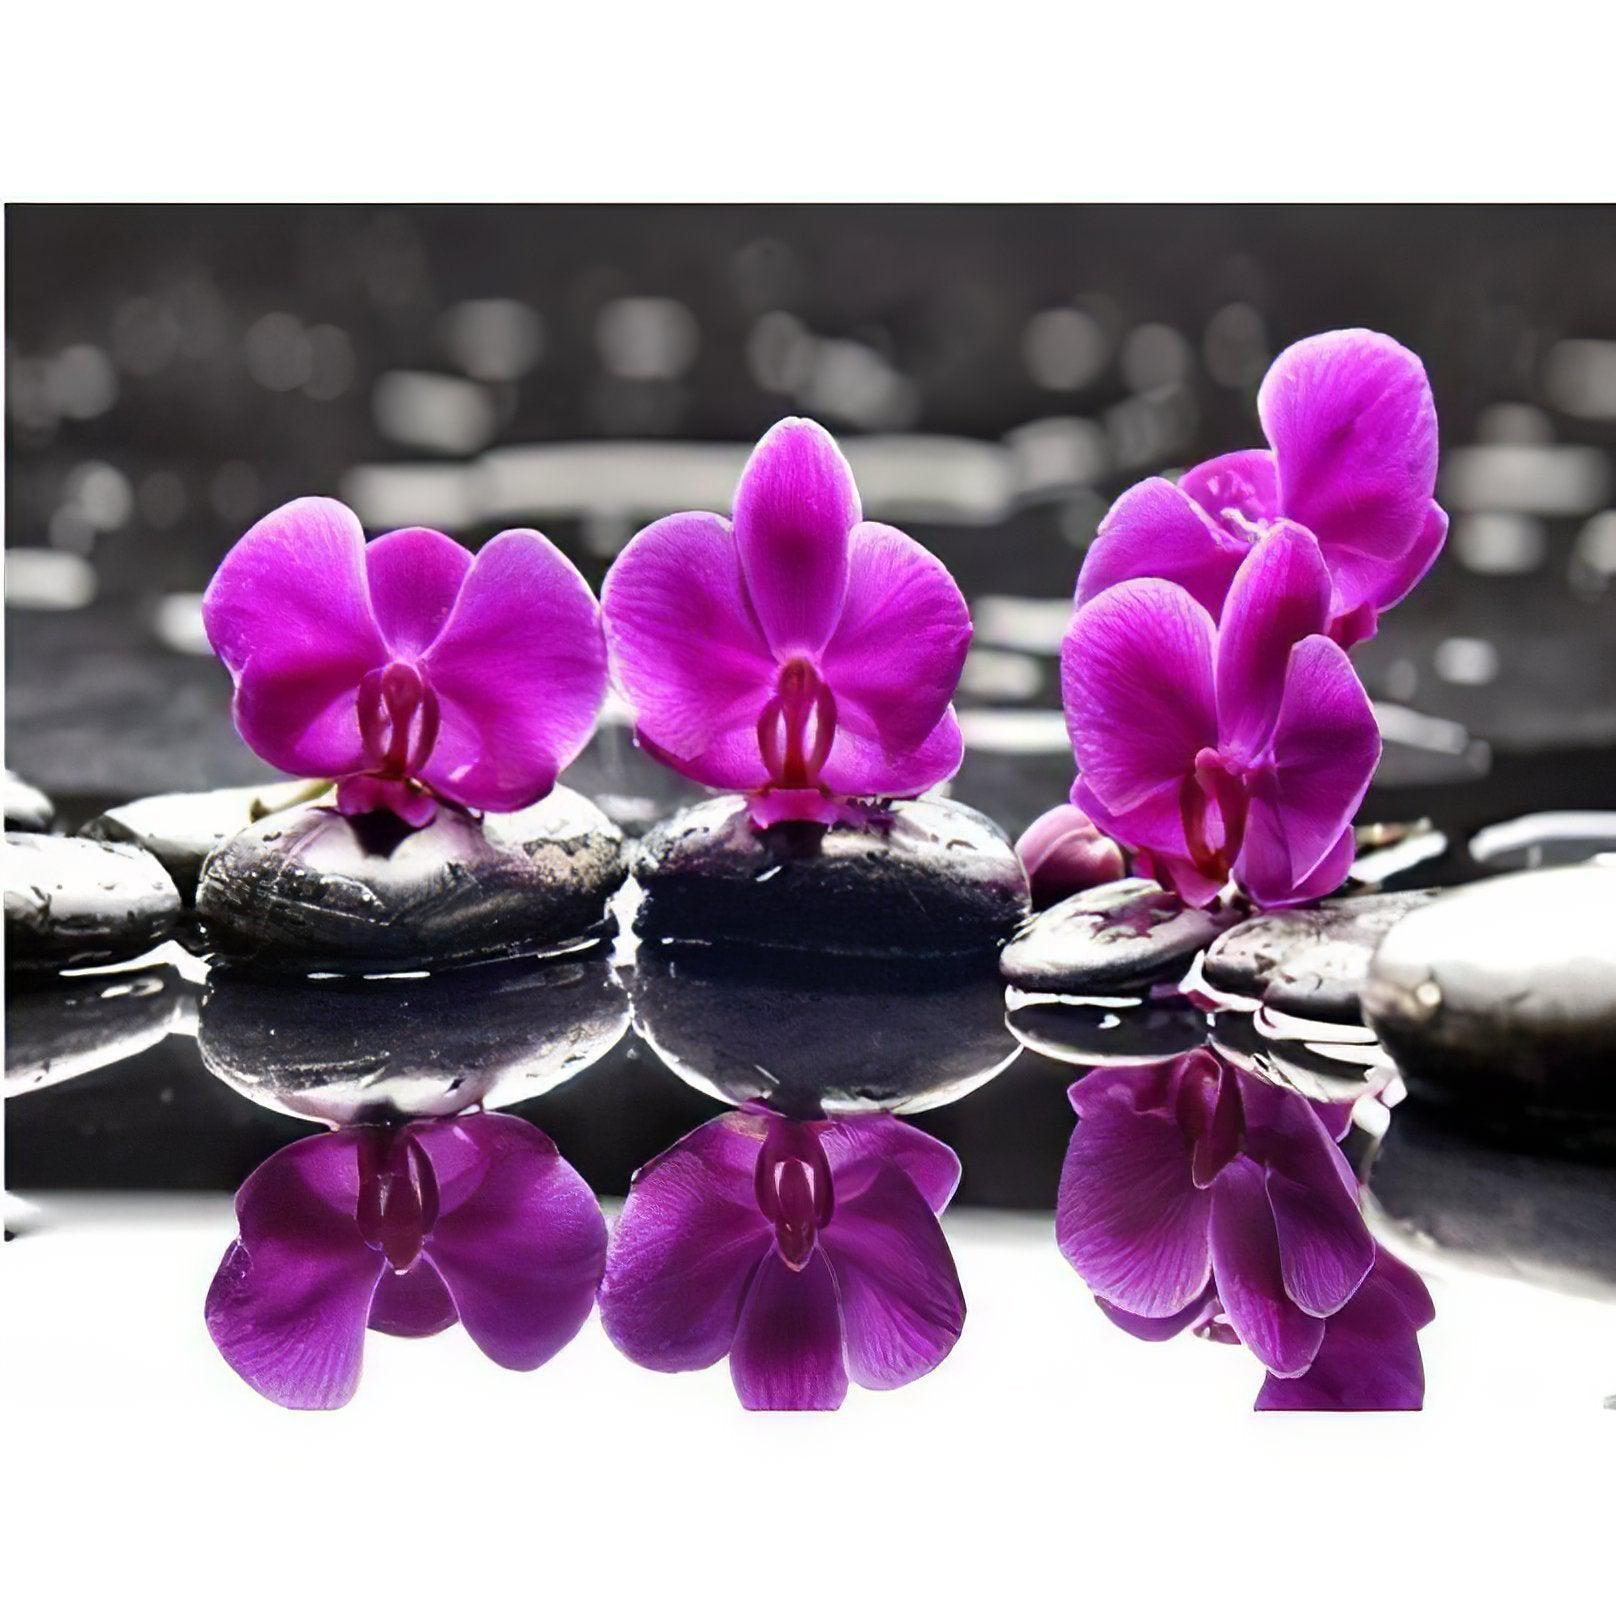 Purple Flower In The Water